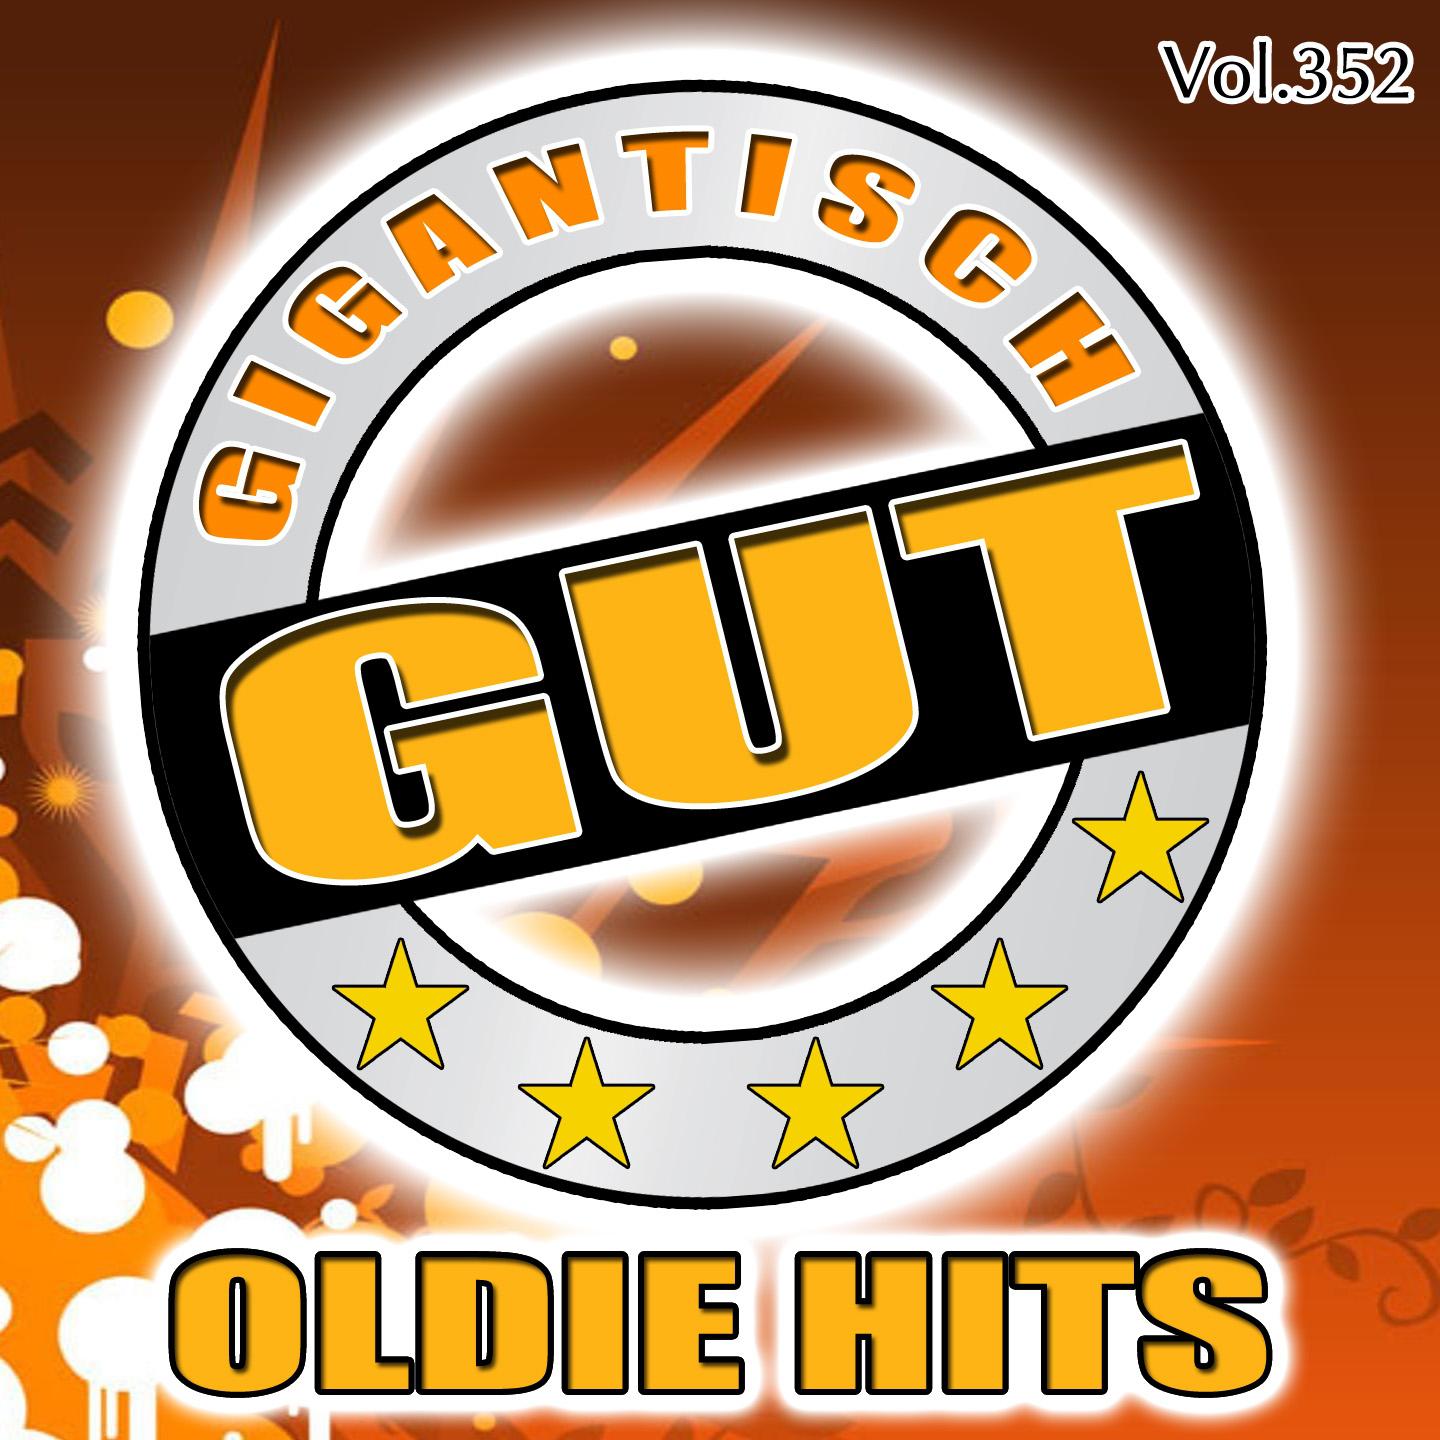 Gigantisch Gut: Oldie Hits, Vol. 352